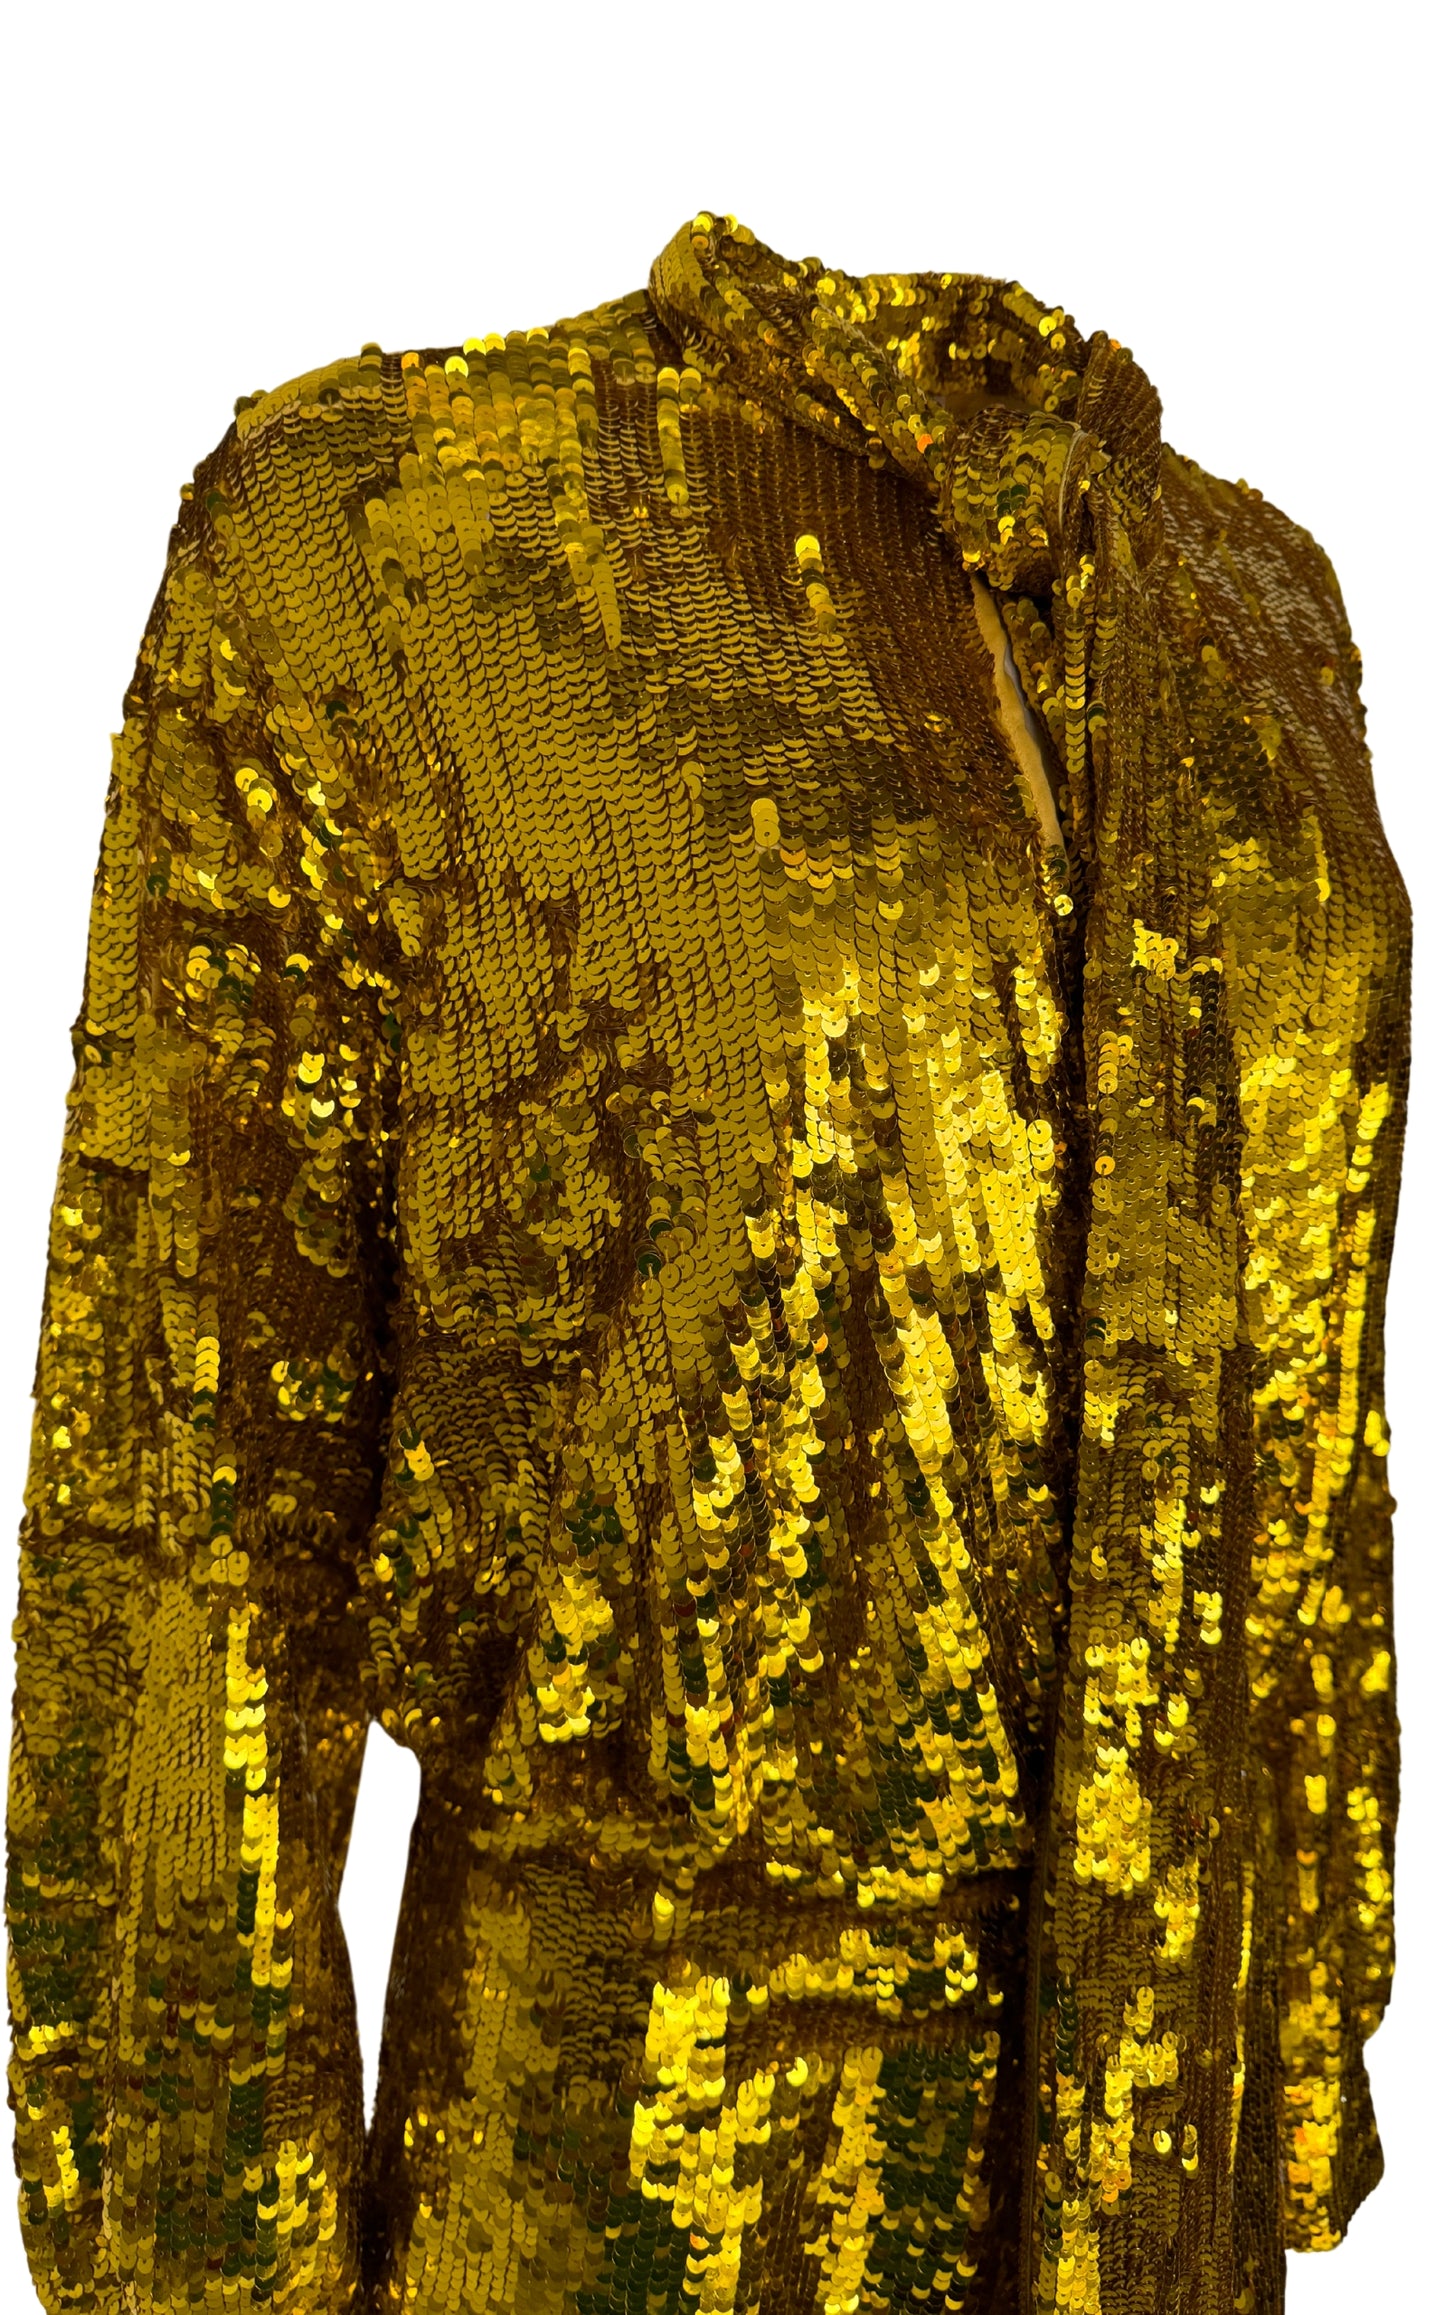 فستان قصير من التول مزين بالترتر باللون الذهبي